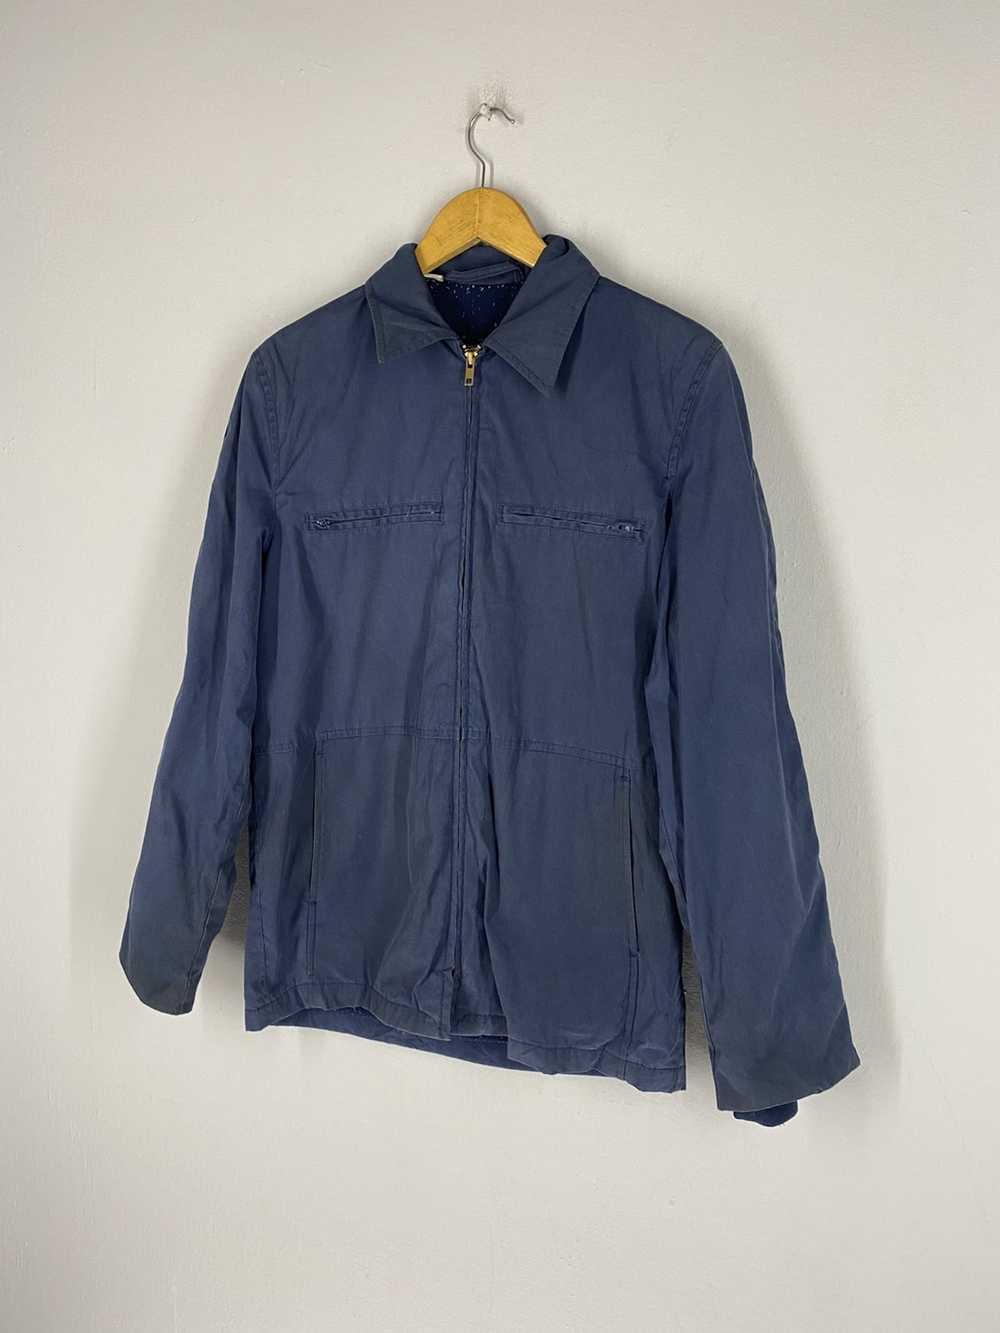 Usn Vintage 80s USN 32 Top Zipper Jacket - image 5